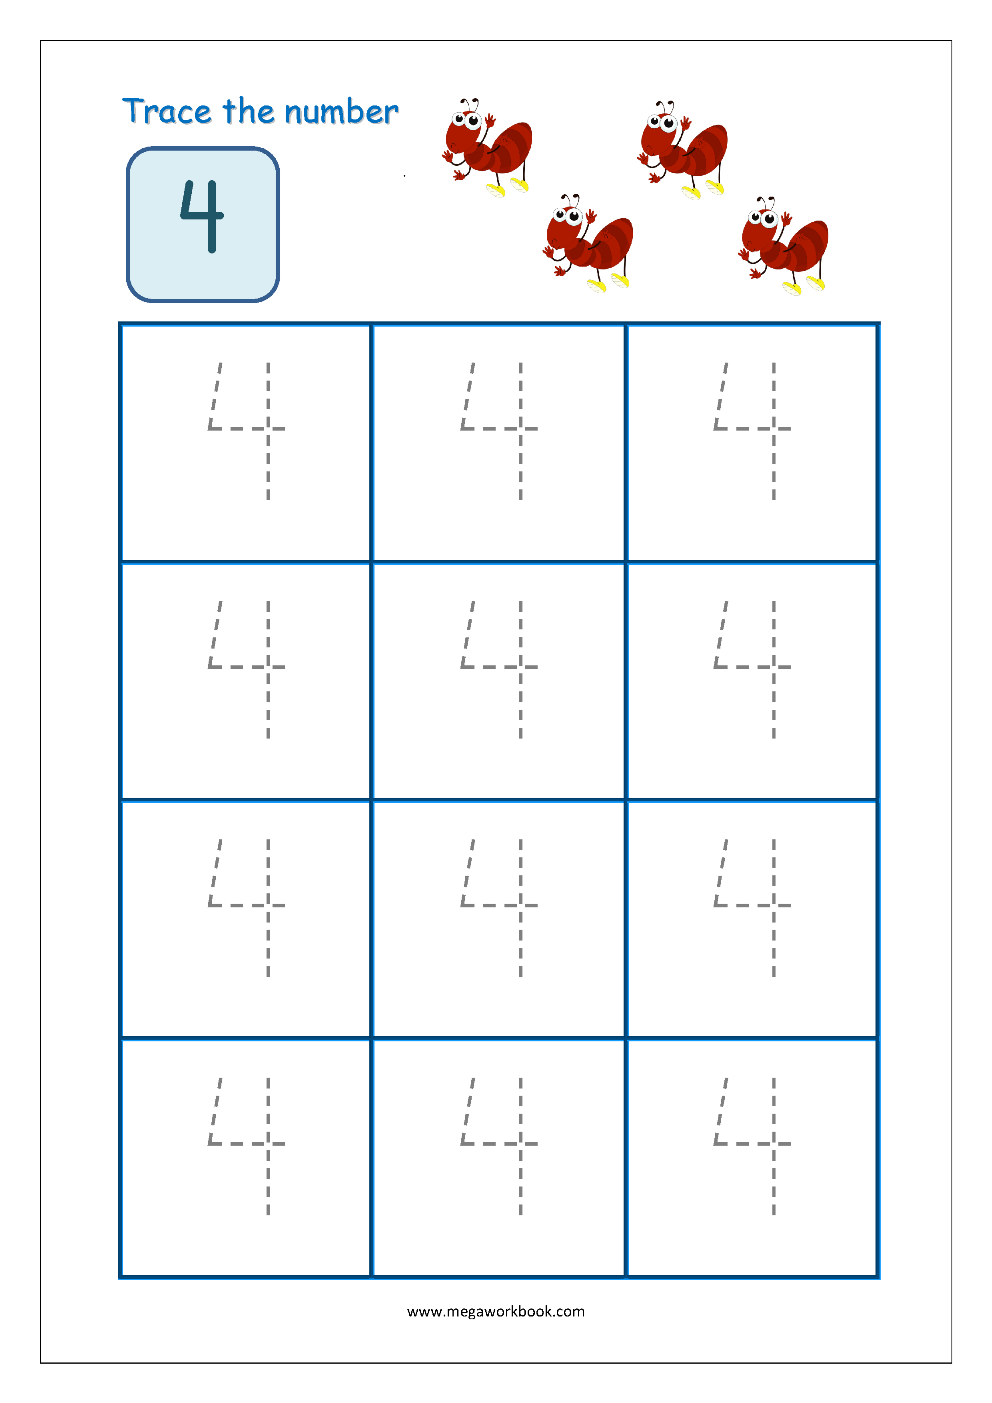 tracing-number-4-worksheets-for-kindergarten-goimages-vision